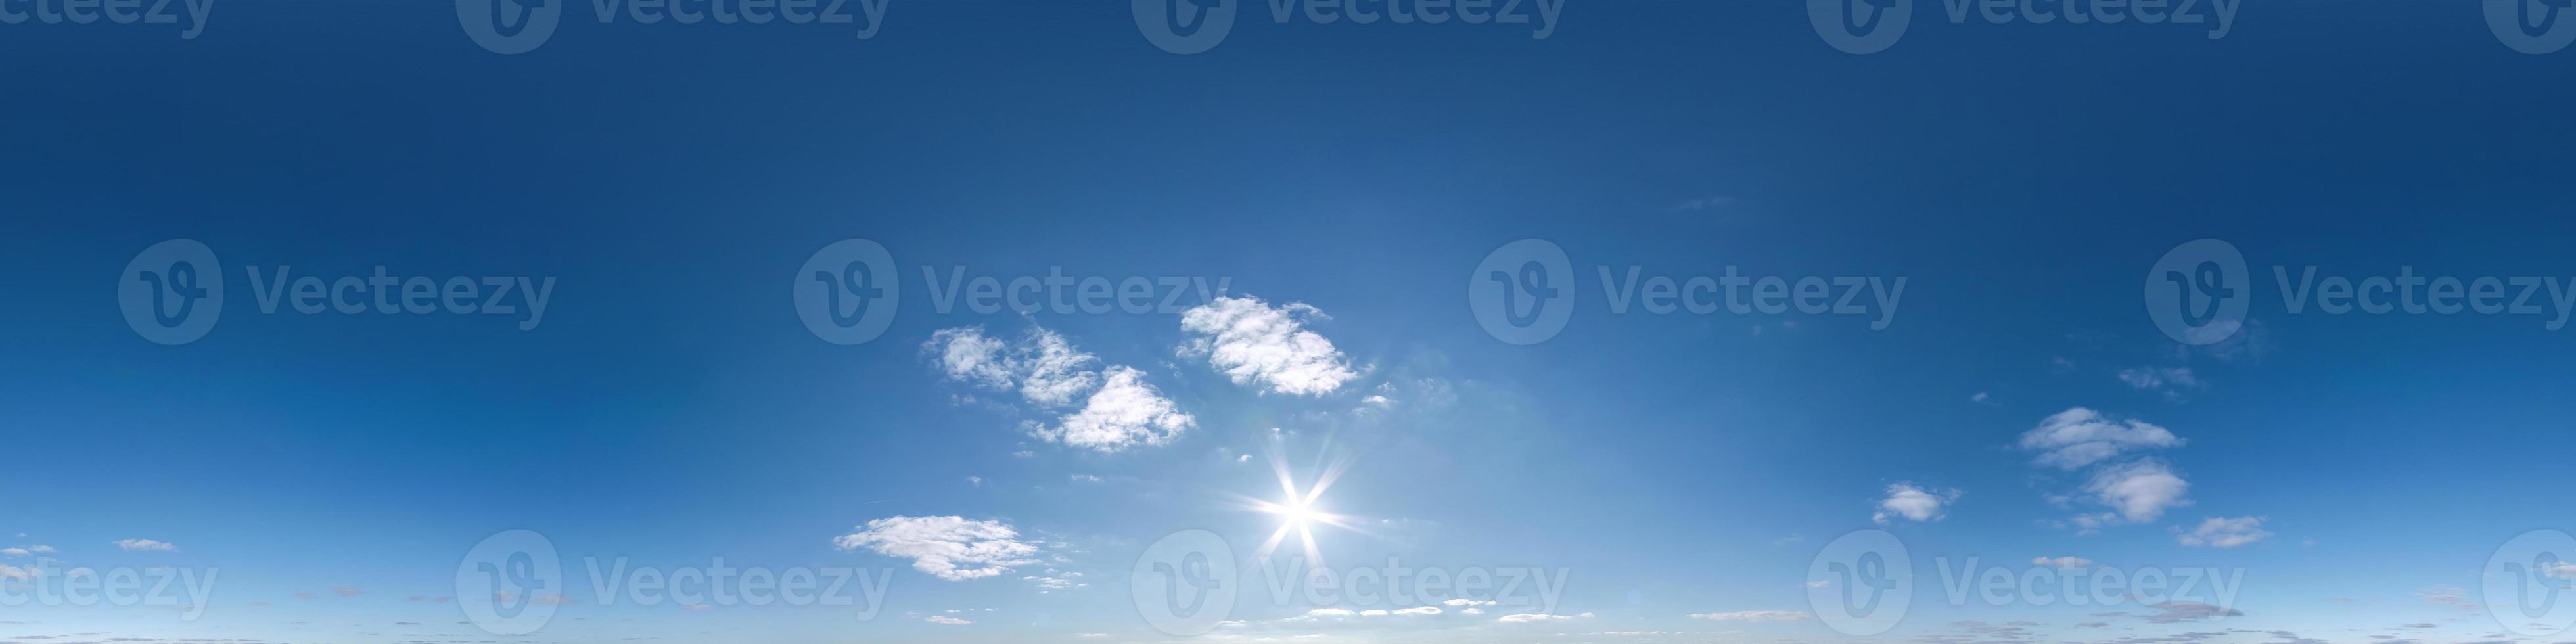 cielo azzurro hdri 360 panorama in proiezione continua con zenit per l'uso in grafica 3d o sviluppo di giochi come sky dome o modifica riprese drone per la sostituzione del cielo foto